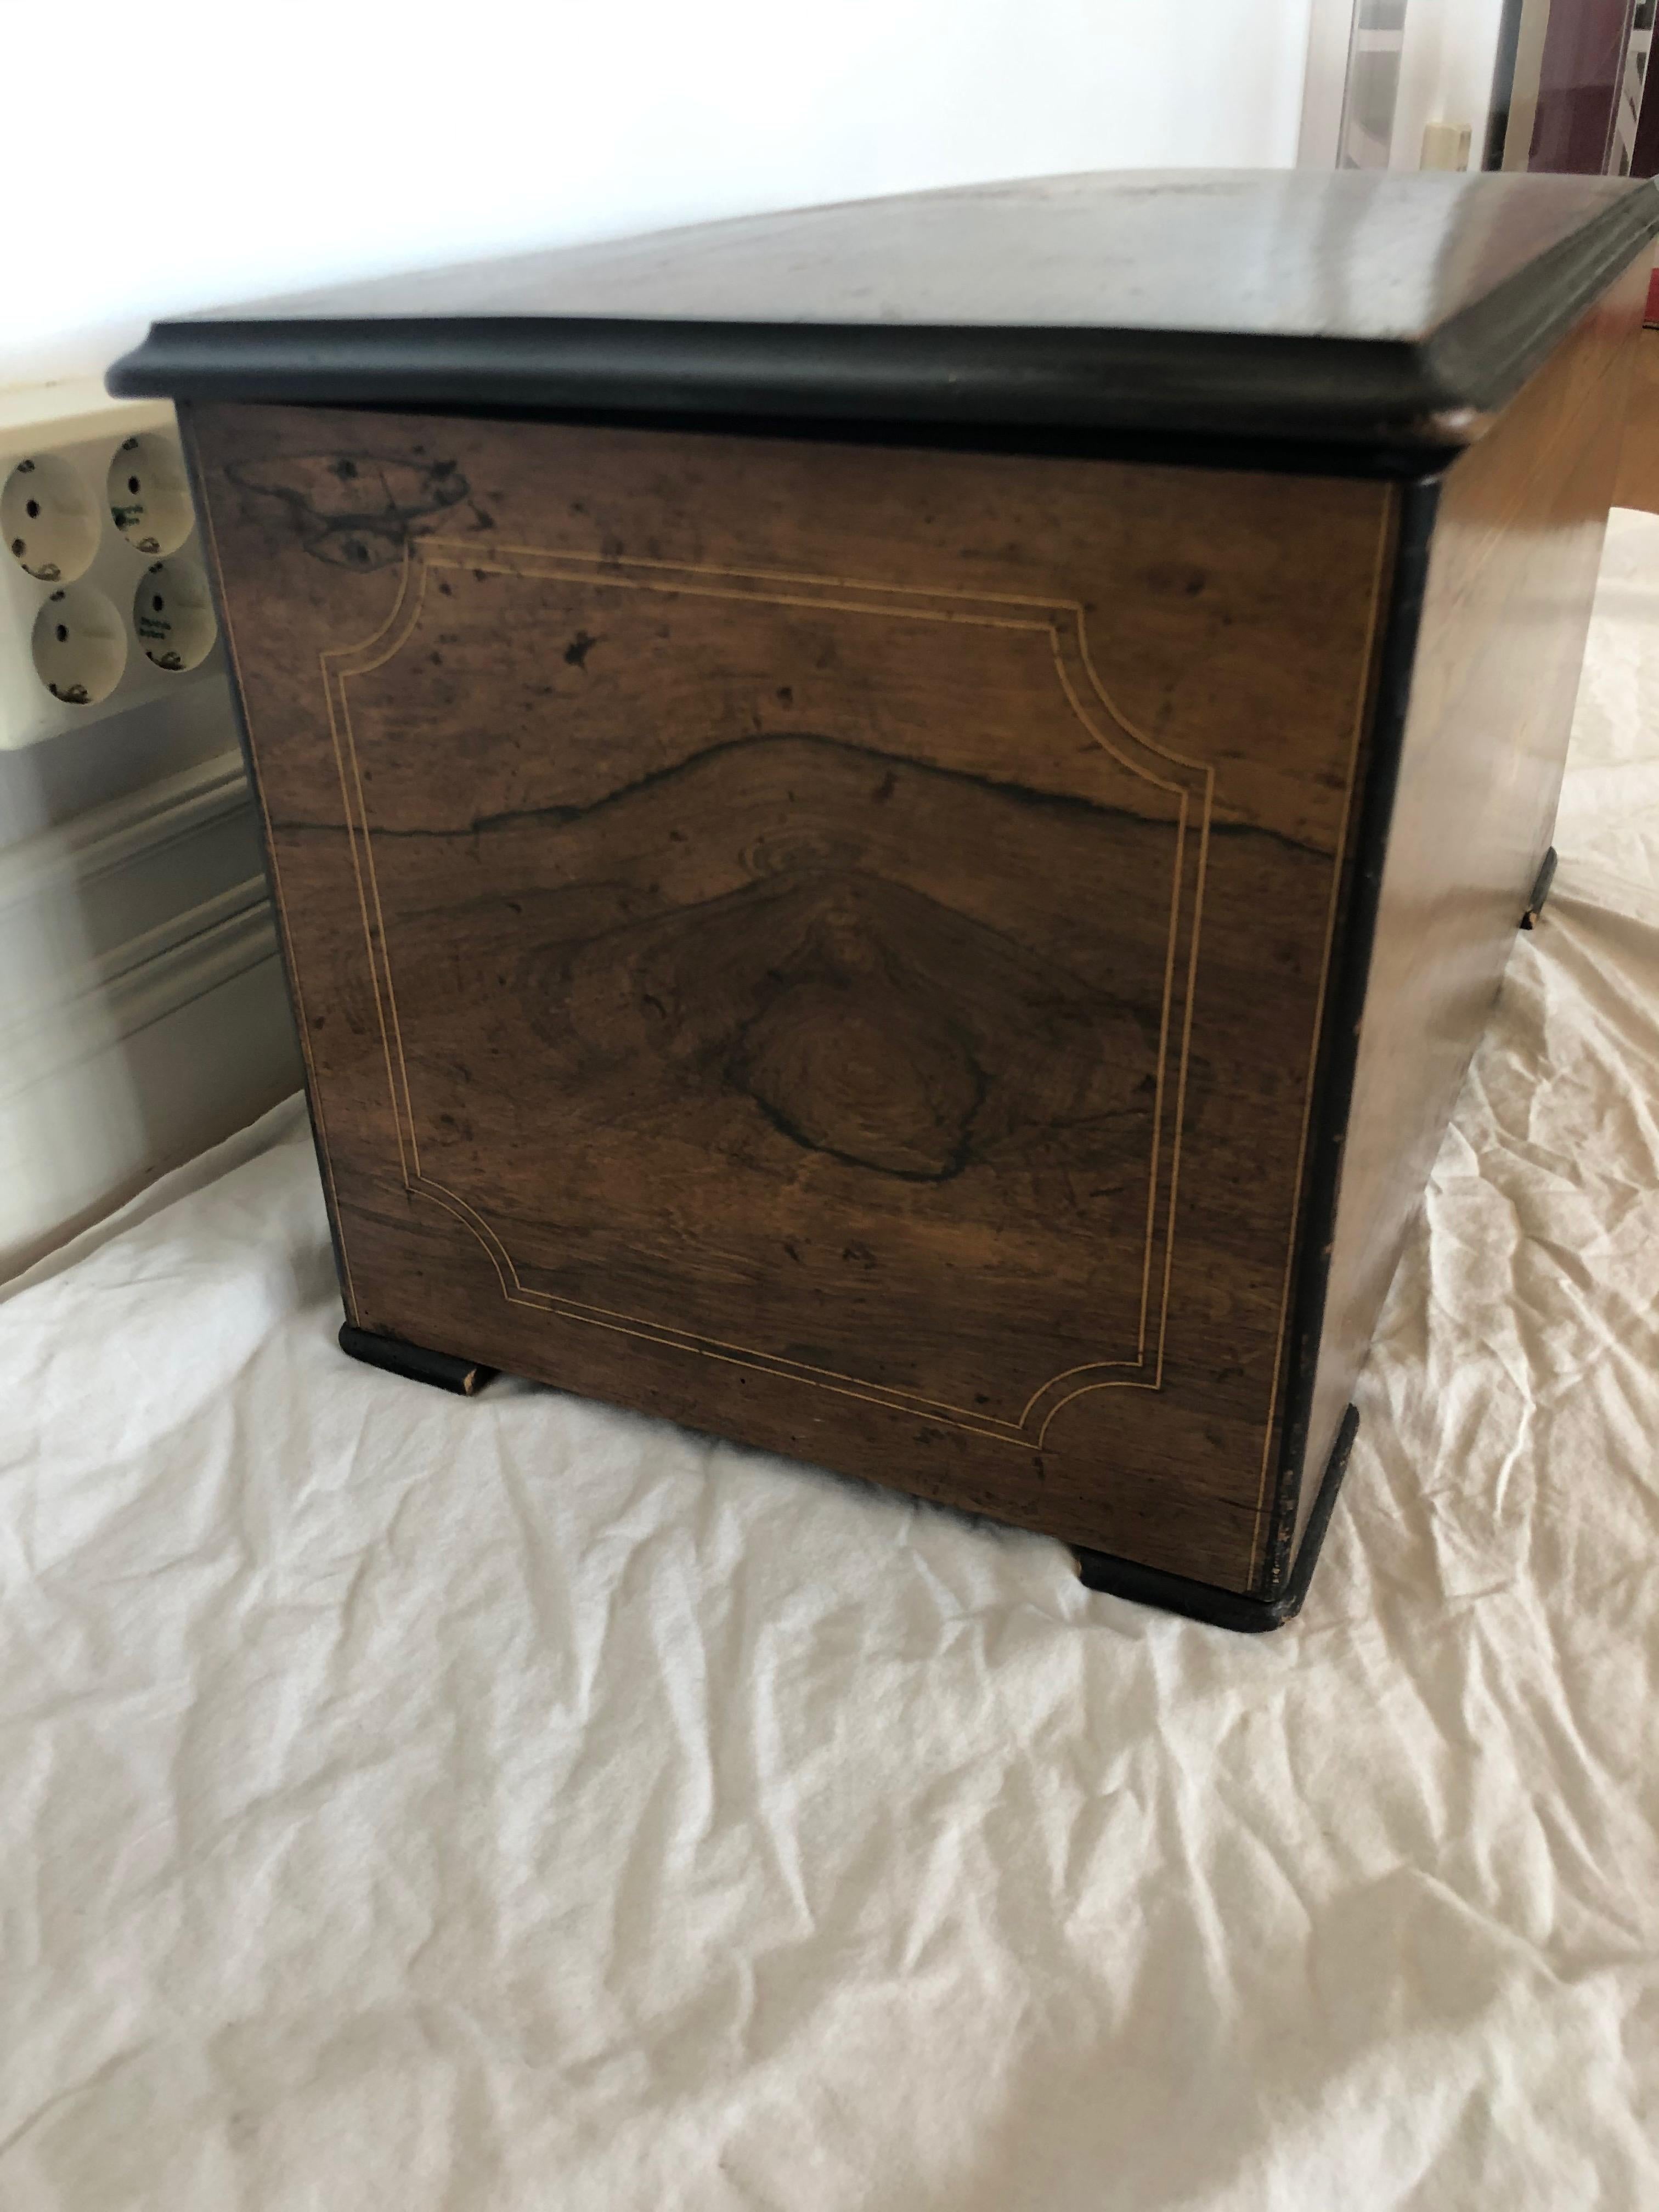 Inlay Music Box, Made in Switzerland, Late 19th Century